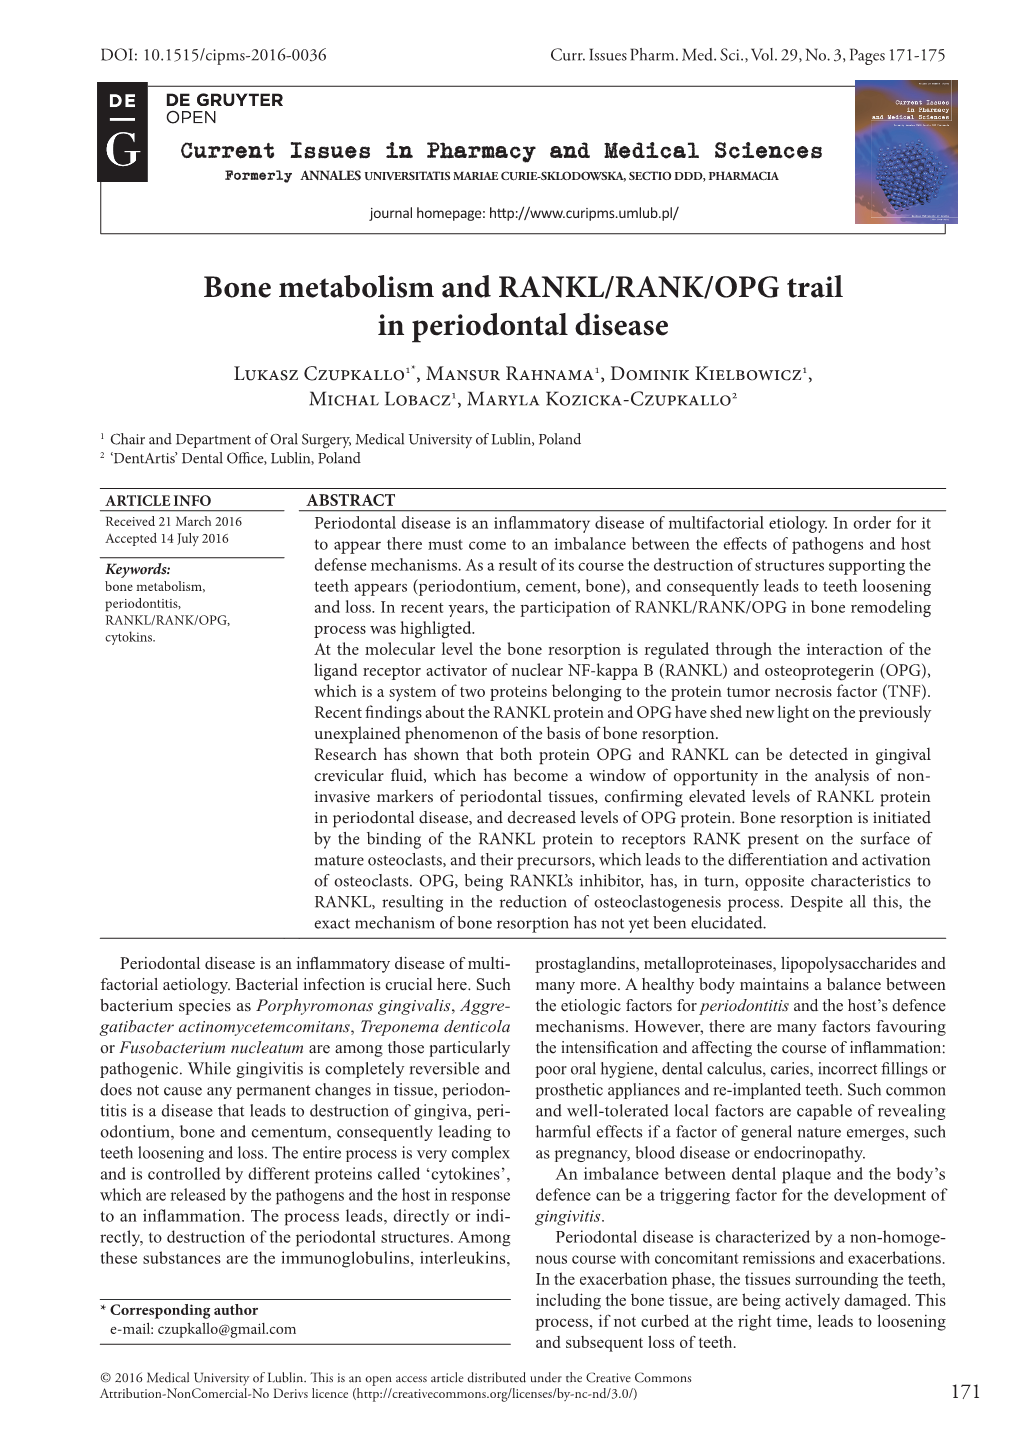 Bone Metabolism and RANKL/RANK/OPG Trail in Periodontal Disease Lukasz Czupkallo1*, Mansur Rahnama1, Dominik Kielbowicz1, Michal Lobacz1, Maryla Kozicka-Czupkallo2